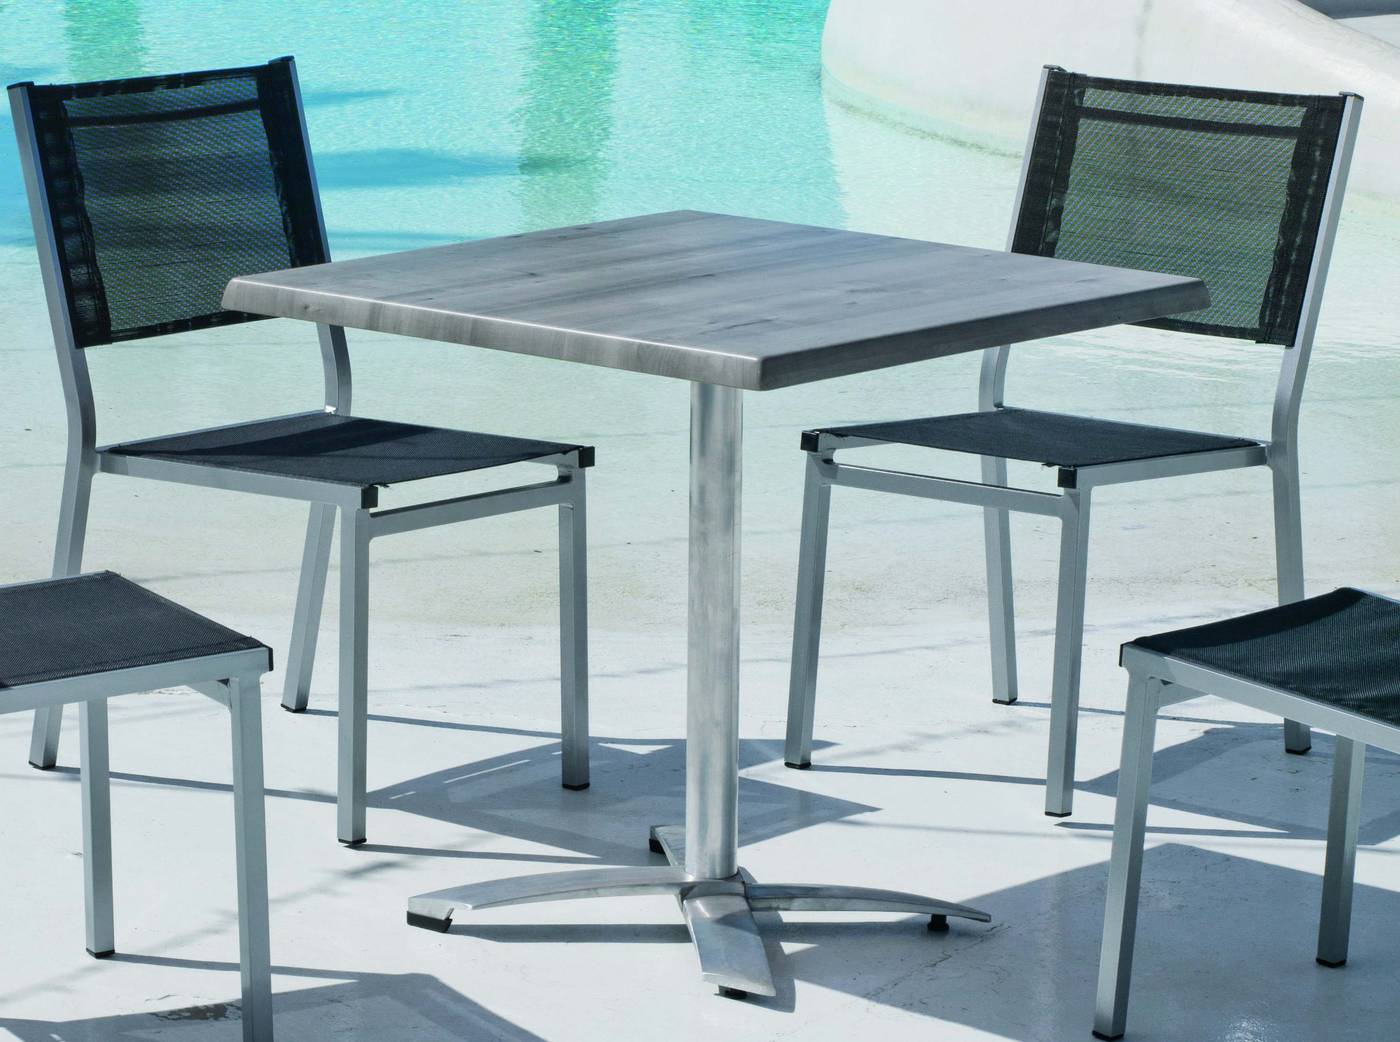 Set Aluminio Lieja/Sion-80/4 - Conjunto aluminio: mesa cuadrada de 120 cm. con tablero de heverzaplus y 6 sillas de aluminio color plata y textilen color gris